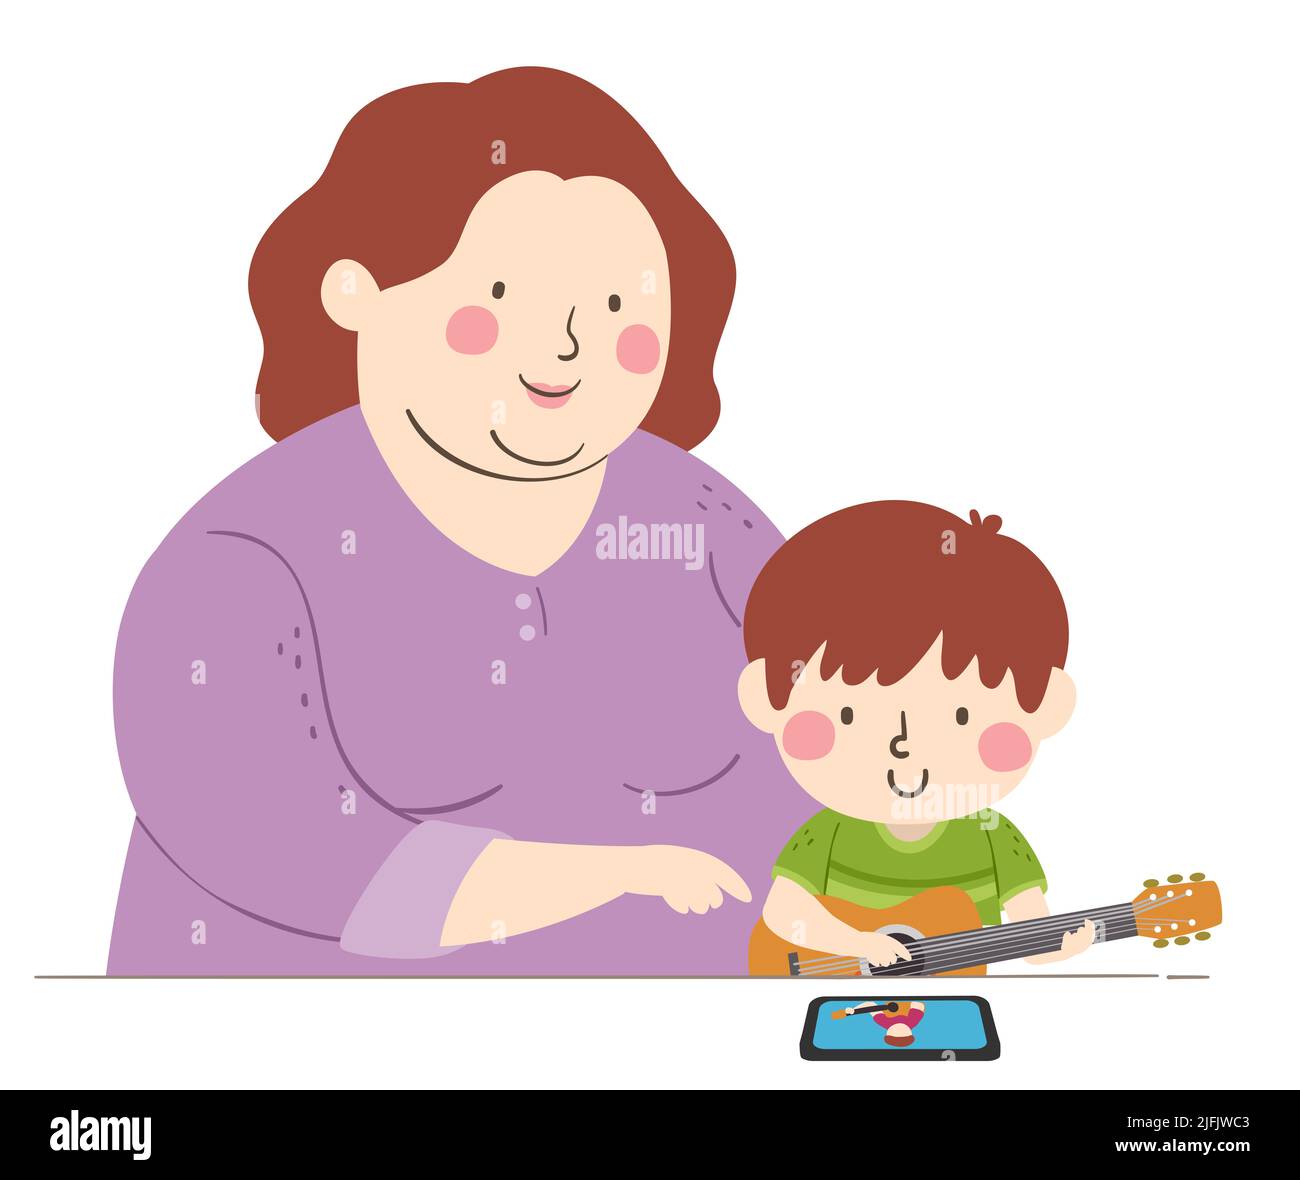 Ilustración de un niño mirando en línea con mamá y aprendiendo la guitarra Foto de stock